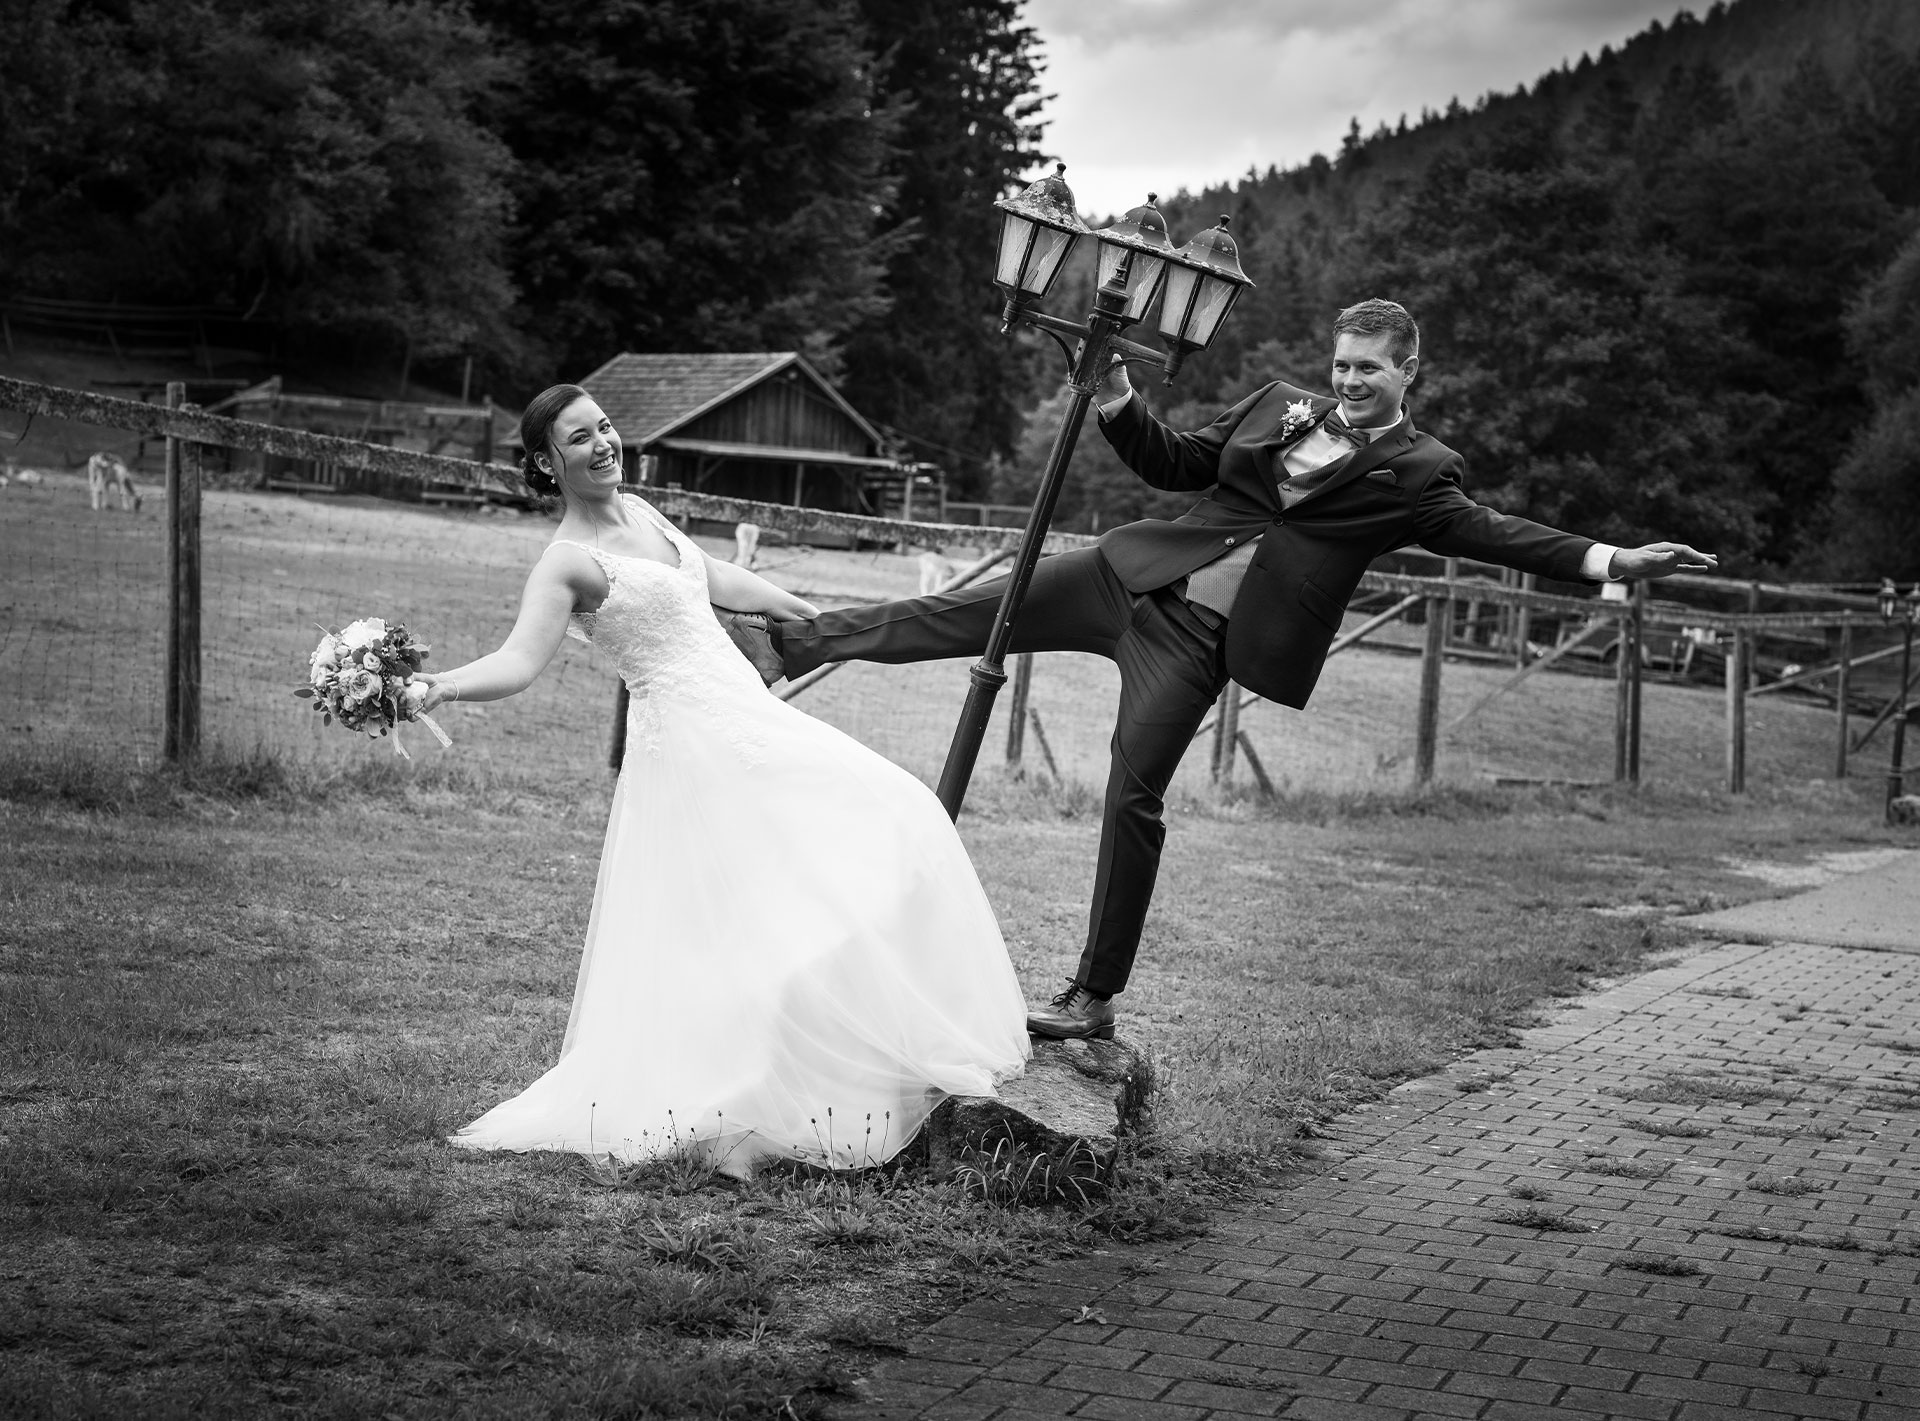 Braut und Bräutigam in einem spielerischen Moment, bei dem der Bräutigam an einer Laterne hängt und die Braut seine Hand hält.